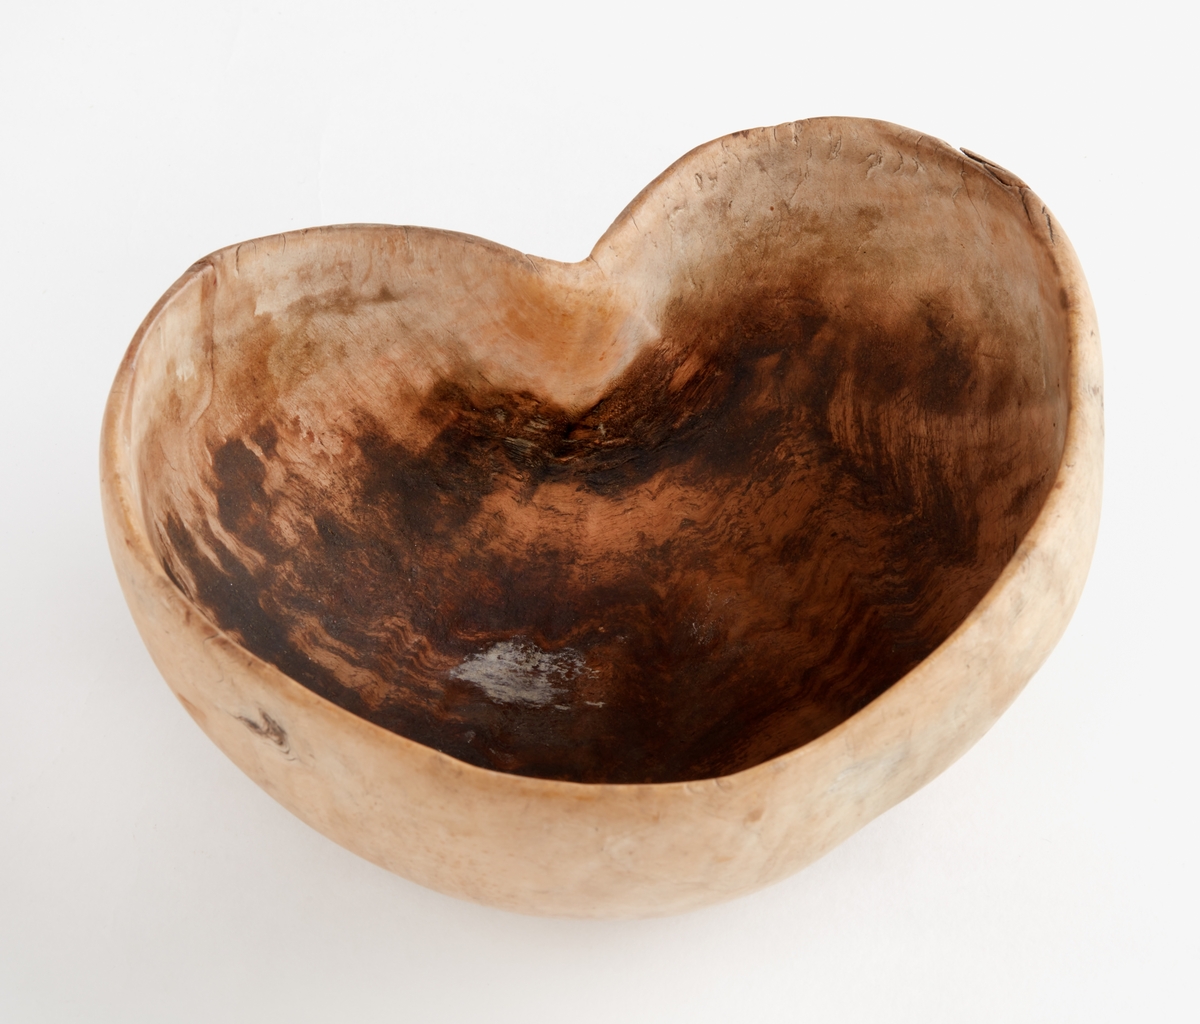 Skål, grötkappe av trä från Transtrand. Hjärtformig. Tillverkad av tallvria. Använd till matskål. Årtal: "1696, MP", bomärke.